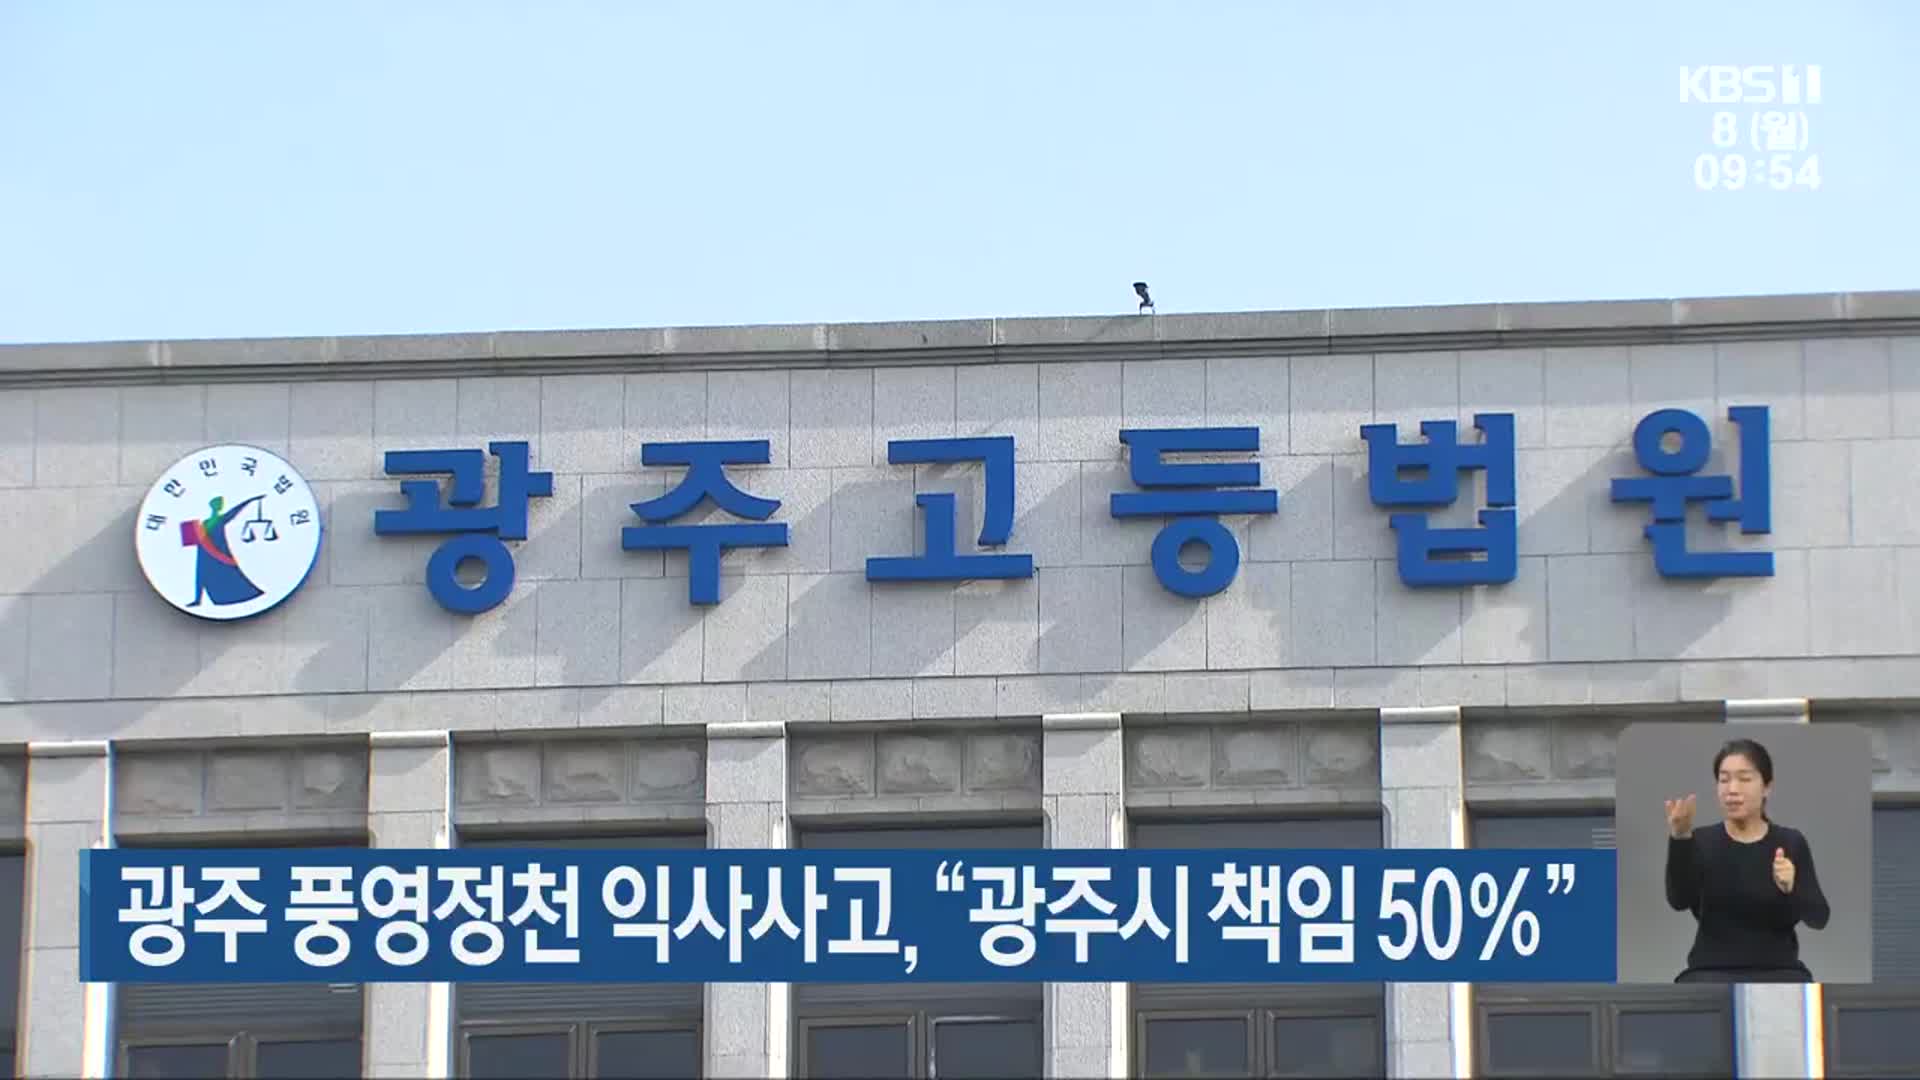 광주 풍영정천 익사사고, “광주시 책임 50%”